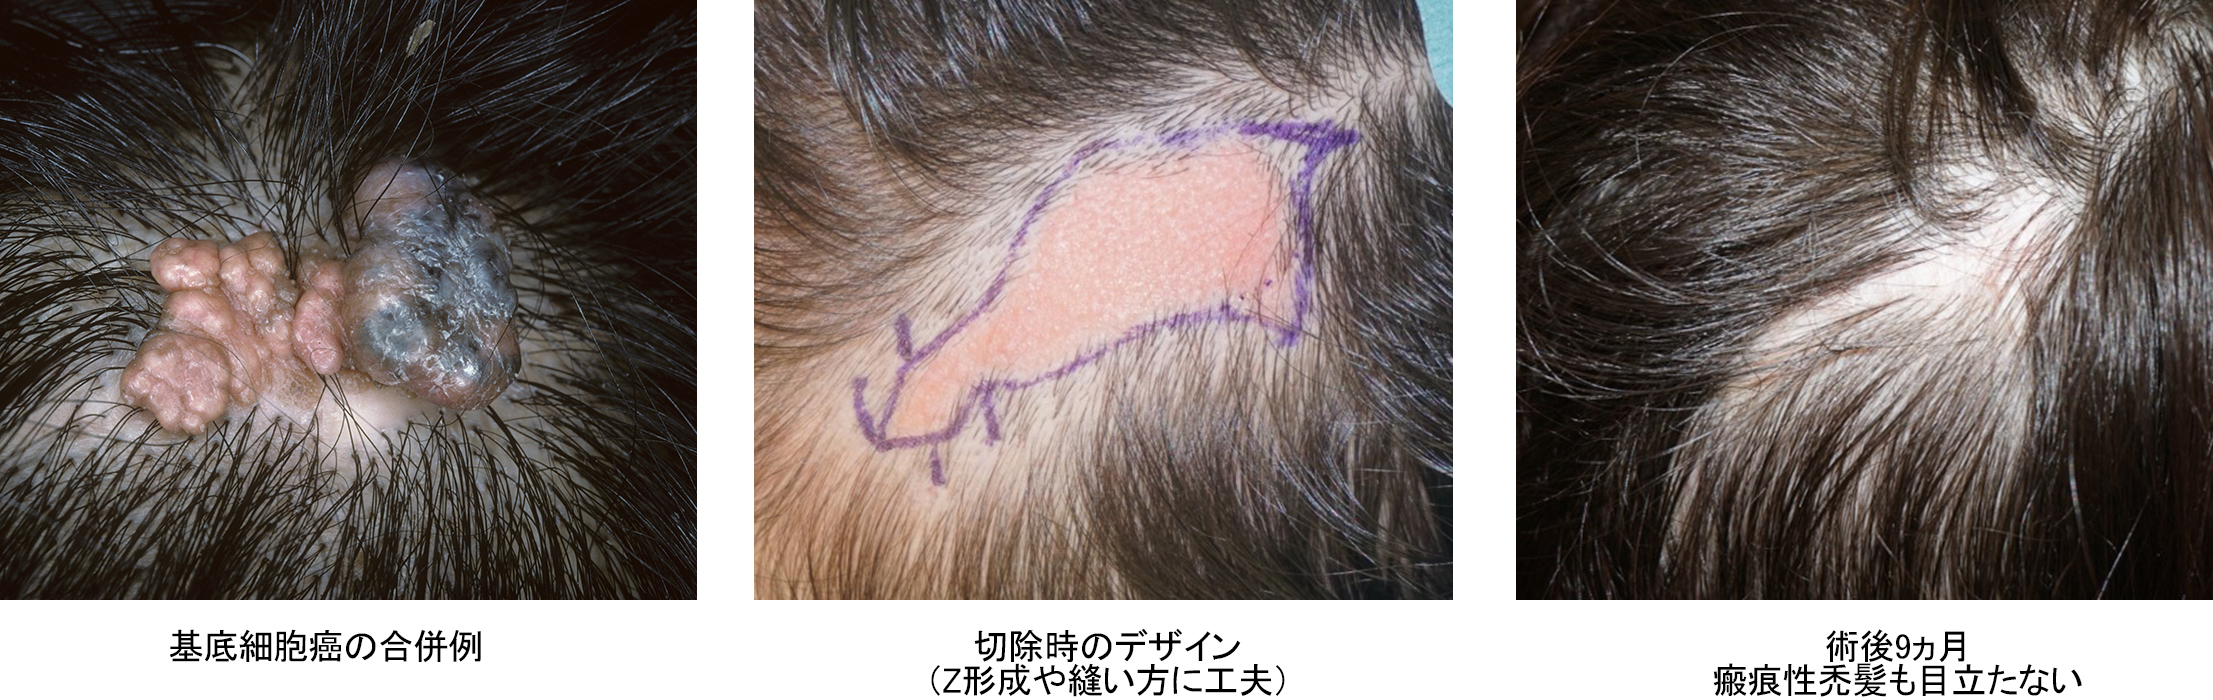 基底細胞癌の合併例　切除時のデザイン（Z形成や縫い方に工夫）　術後9ヵ月　瘢痕性禿髪も目立たない